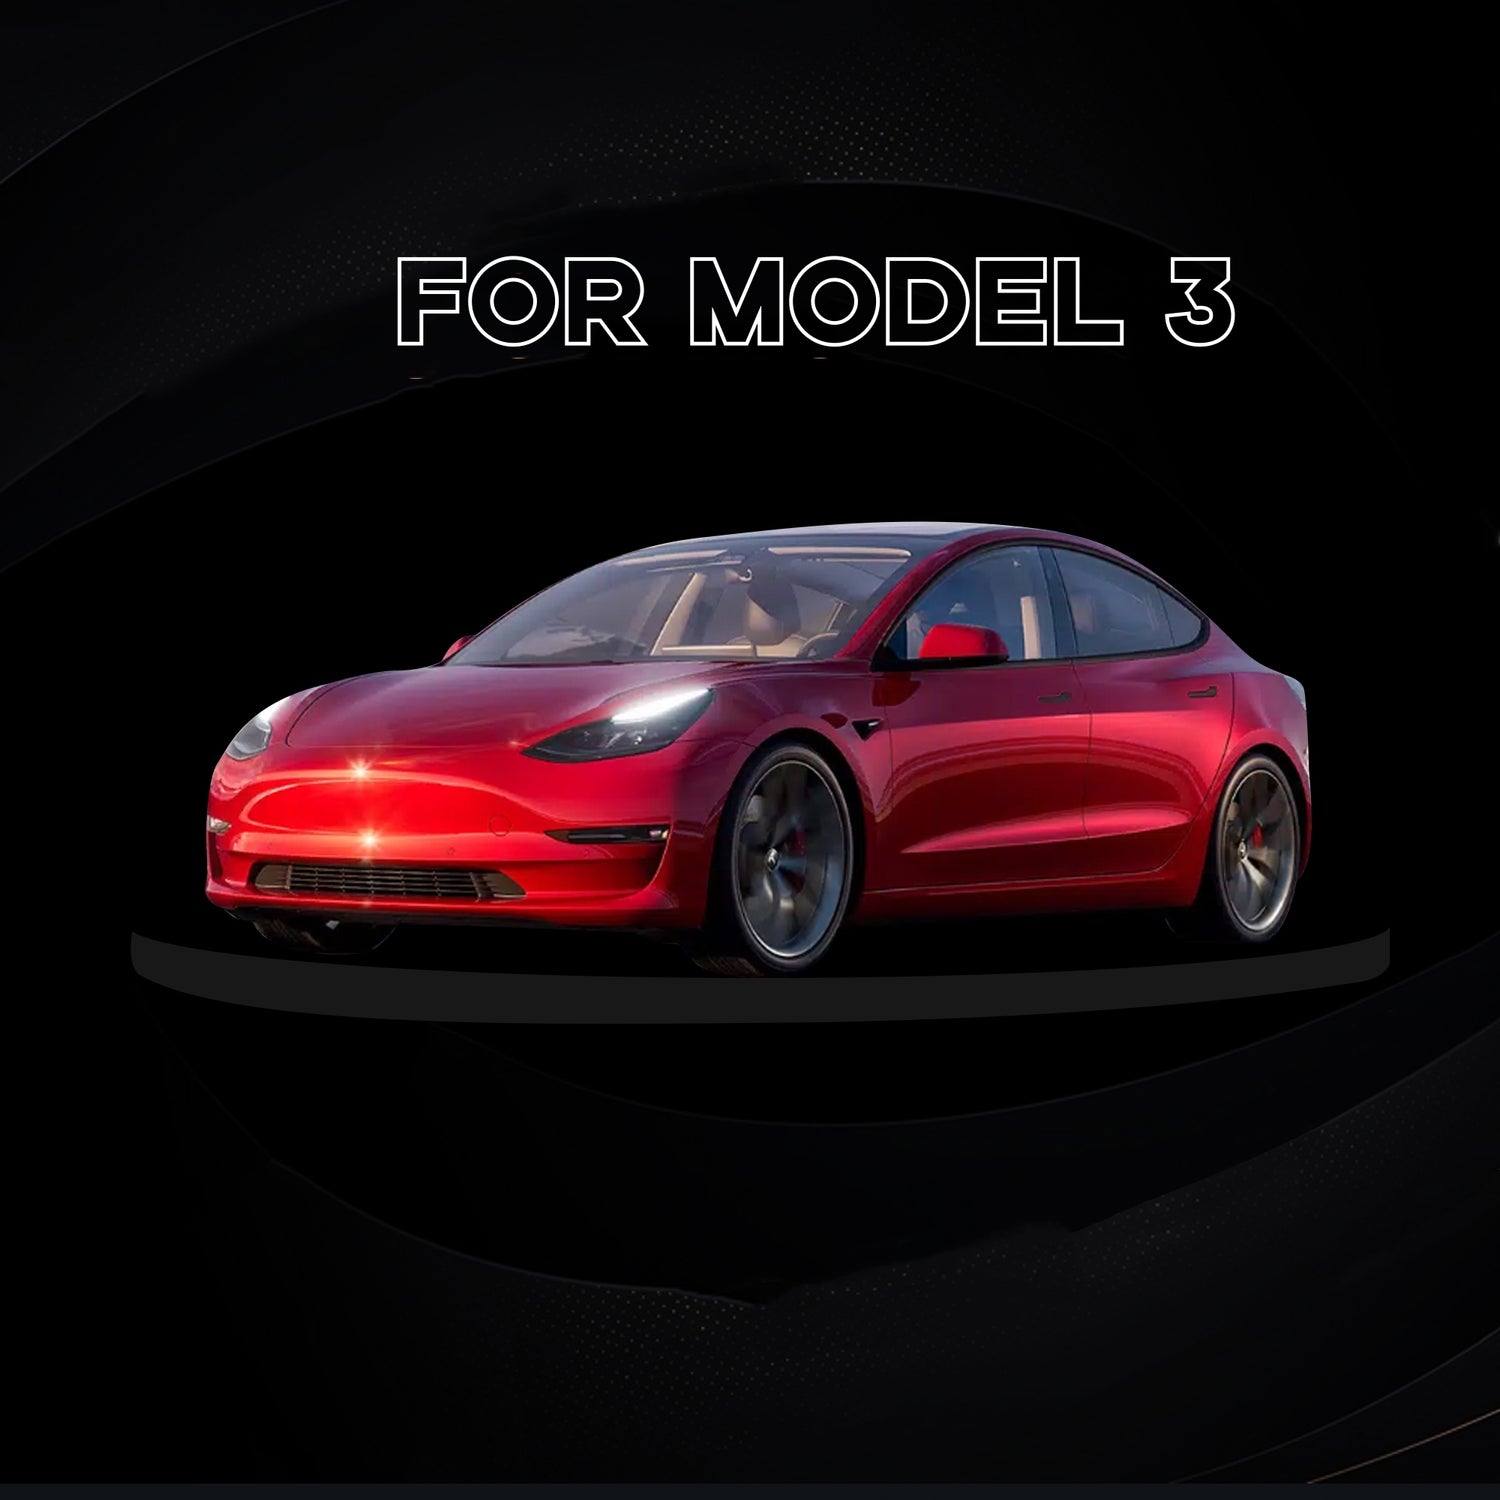 Autoteile für Tesla-Arcoche